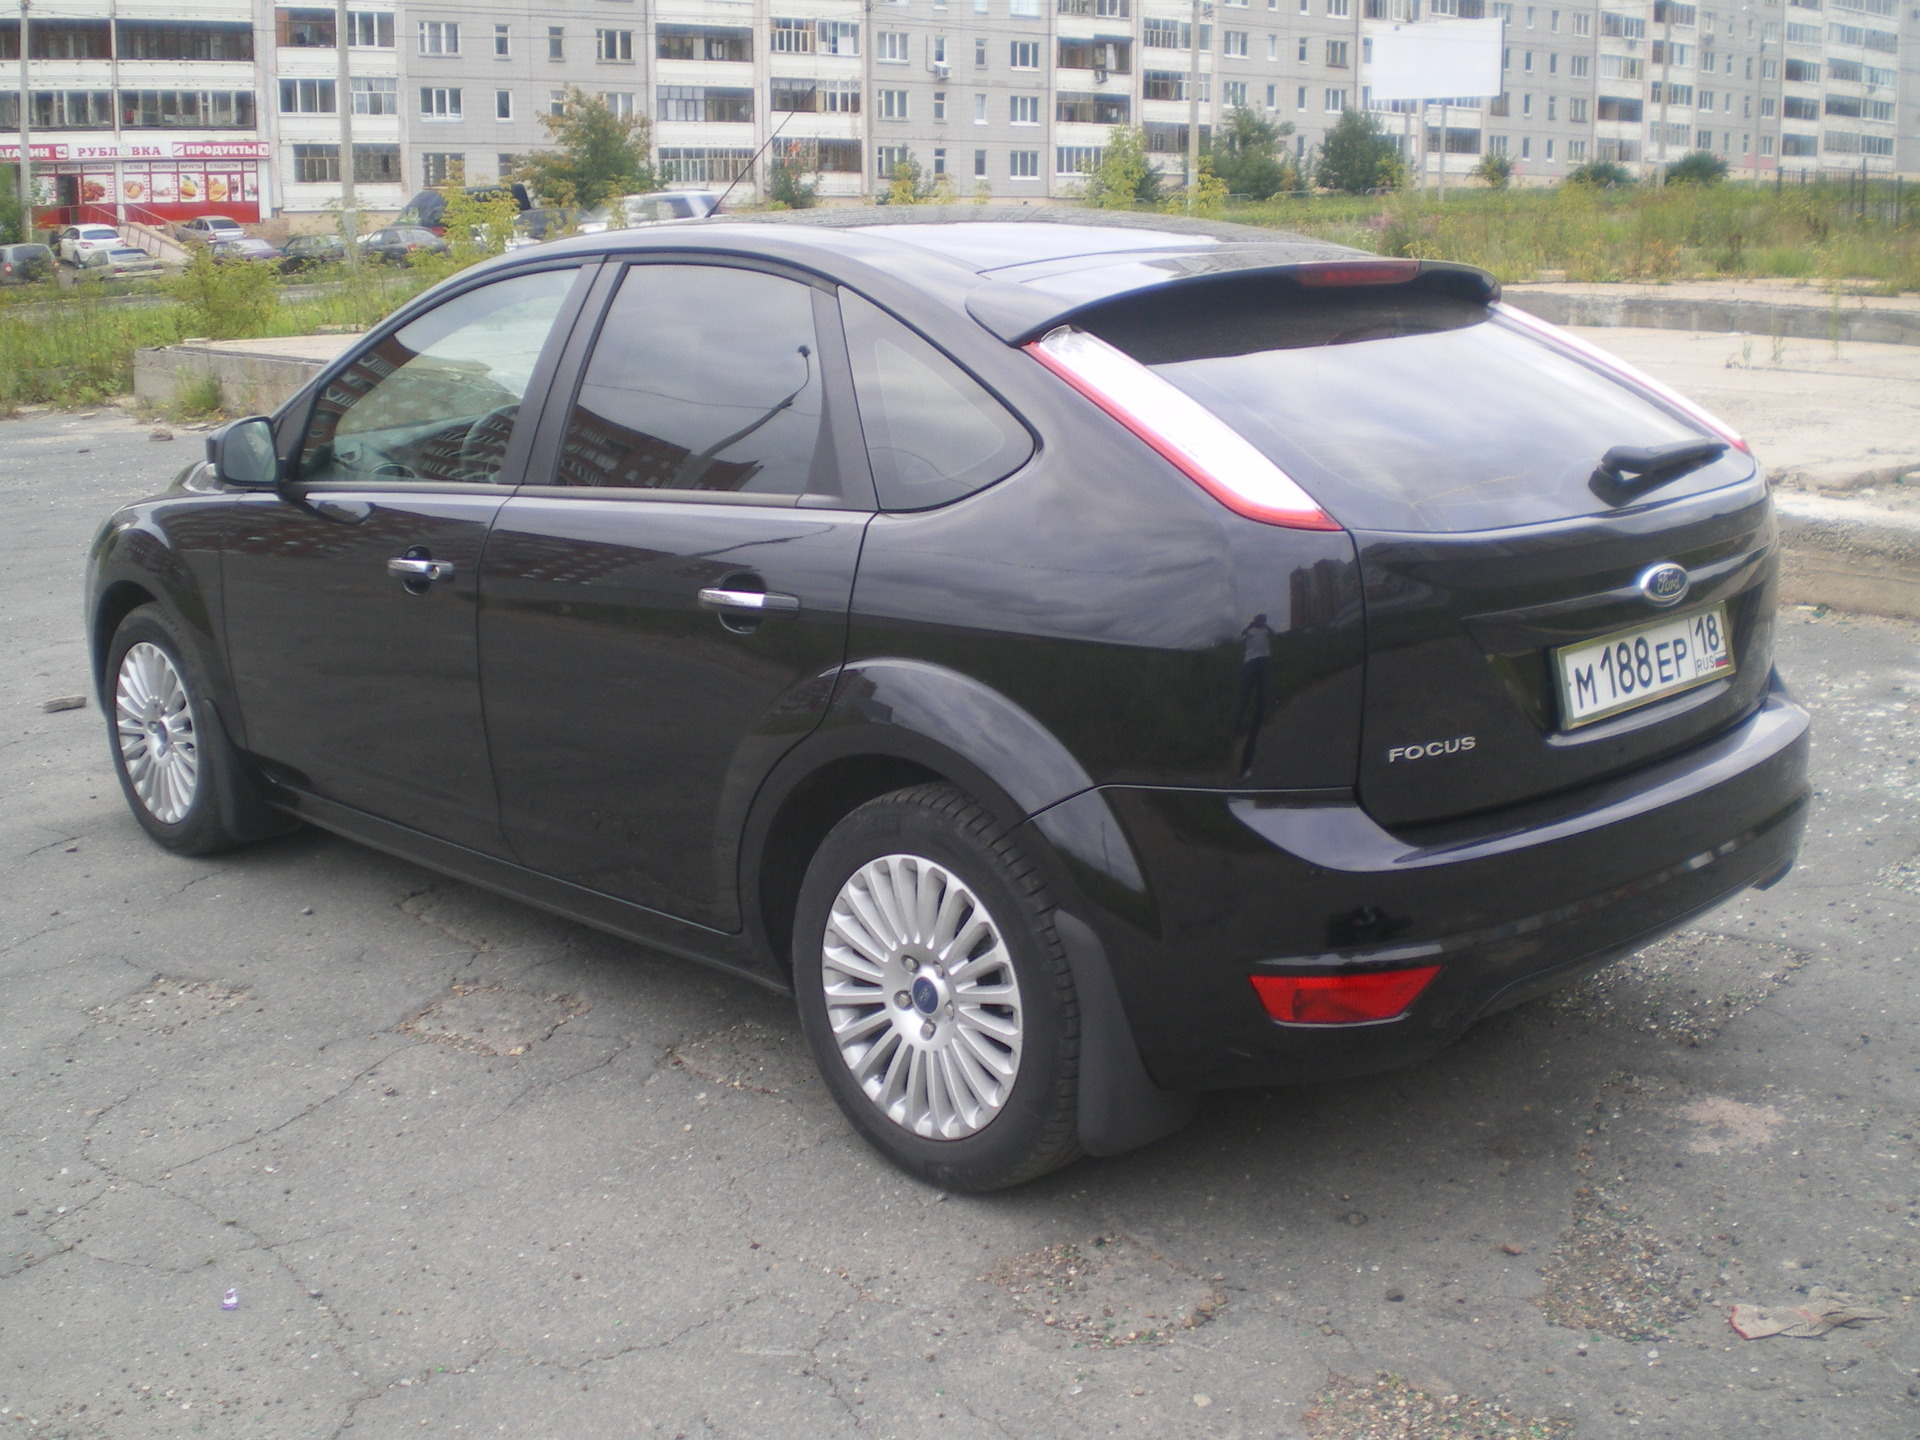 Форд Фокус 2 хэтчбек: продажа и цены в Москве